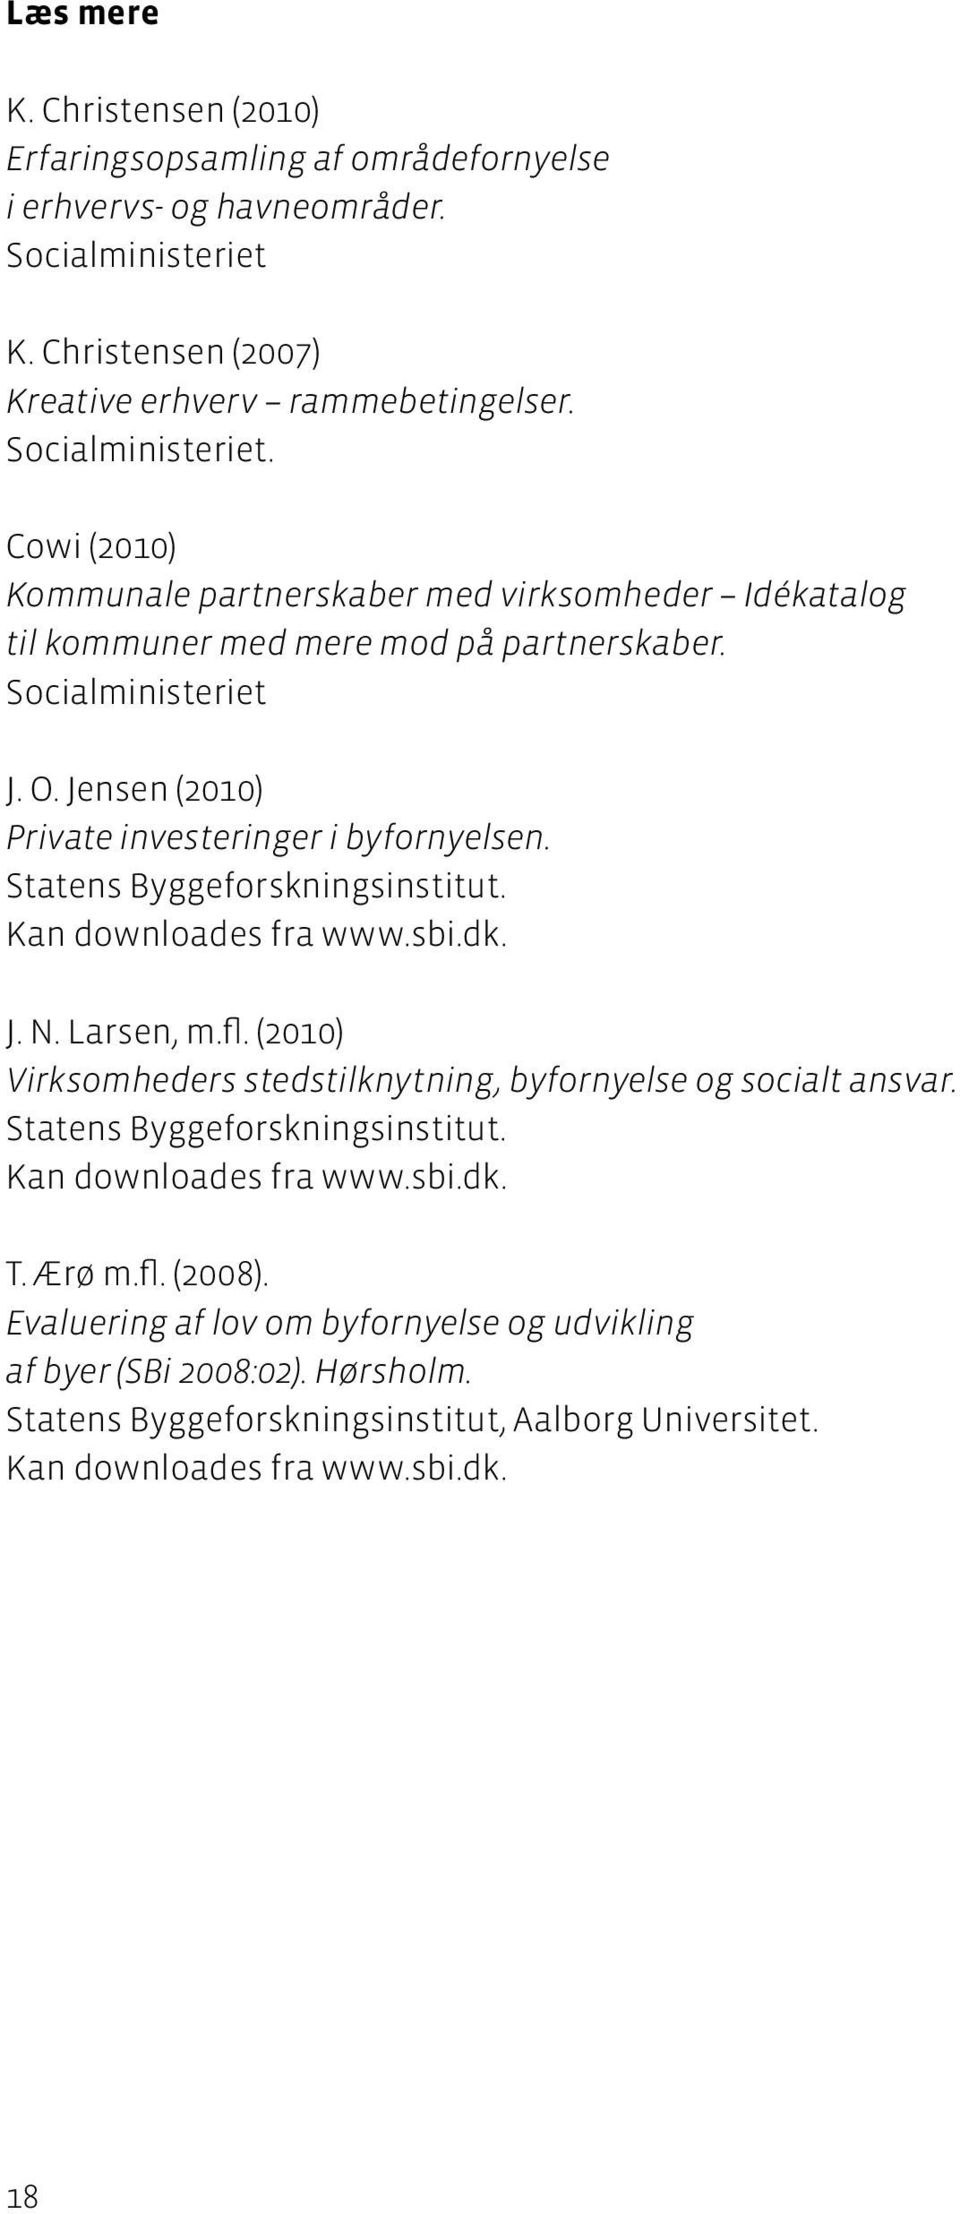 Socialministeriet J. O. Jensen (2010) Private investeringer i byfornyelsen. Statens Byggeforskningsinstitut. Kan downloades fra www.sbi.dk. J. N. Larsen, m.fl.